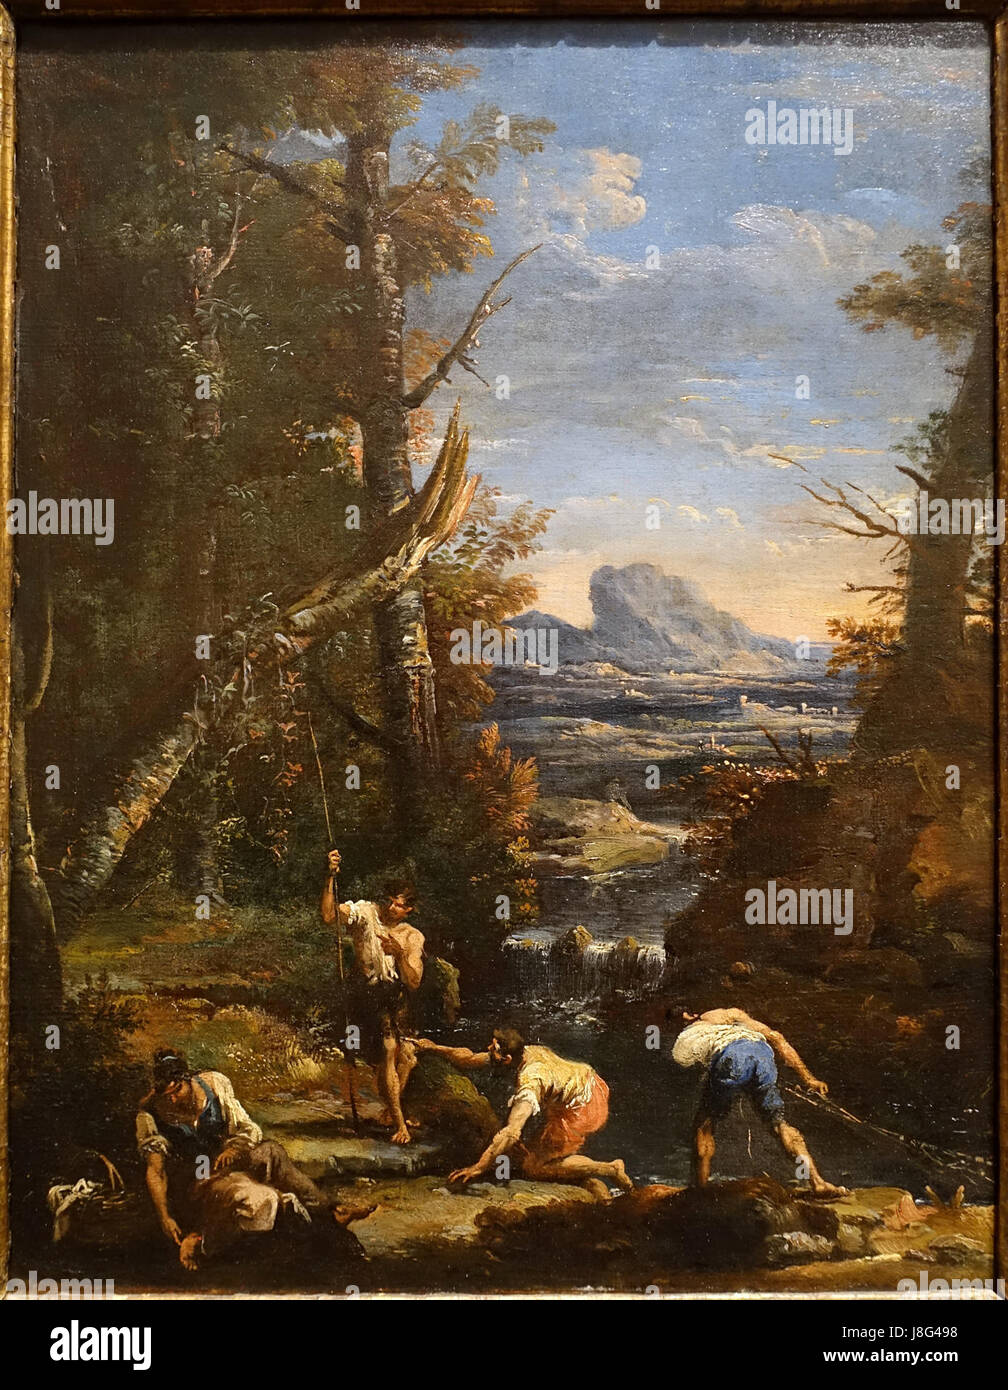 Paysage avec des pêcheurs et des lavandières, par Marco Ricci, Sebastiano Ricci, c. 1700, 1710 huile sur toile Blanton Museum of Art, Austin Texas DSC08073 Banque D'Images